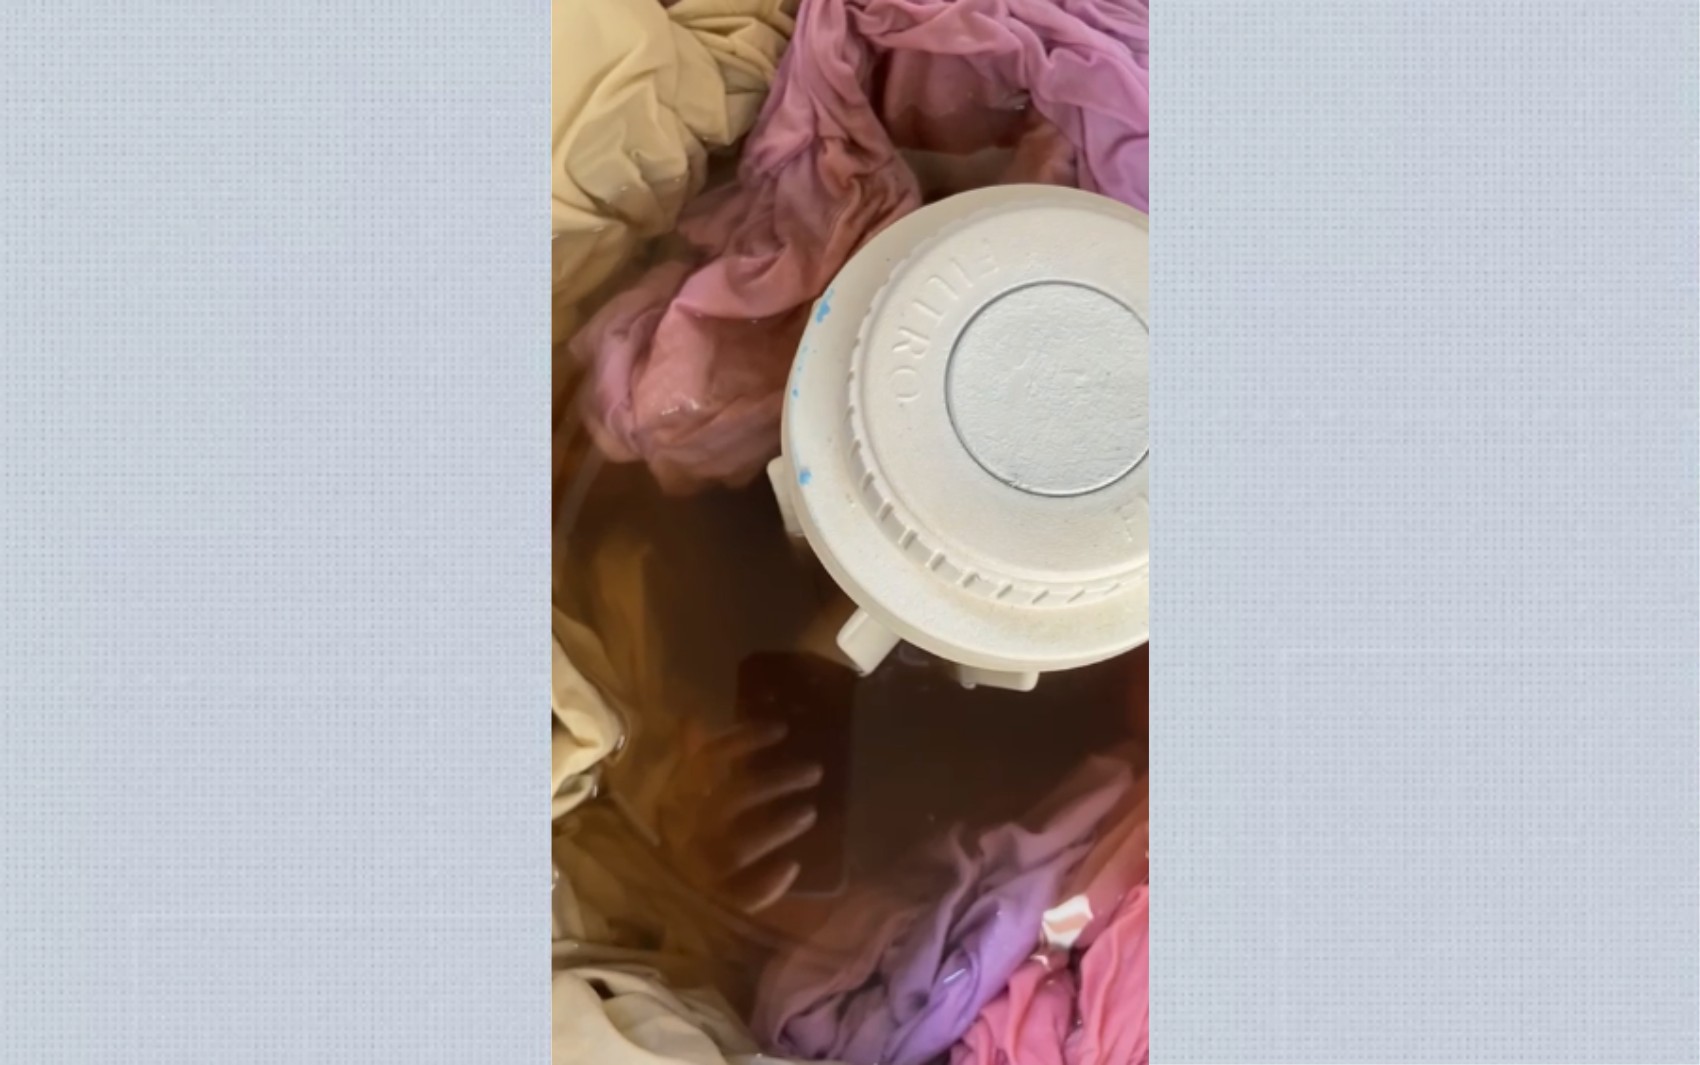 Moradores estranham cheiro e coloração de água das torneiras em Barretos, SP